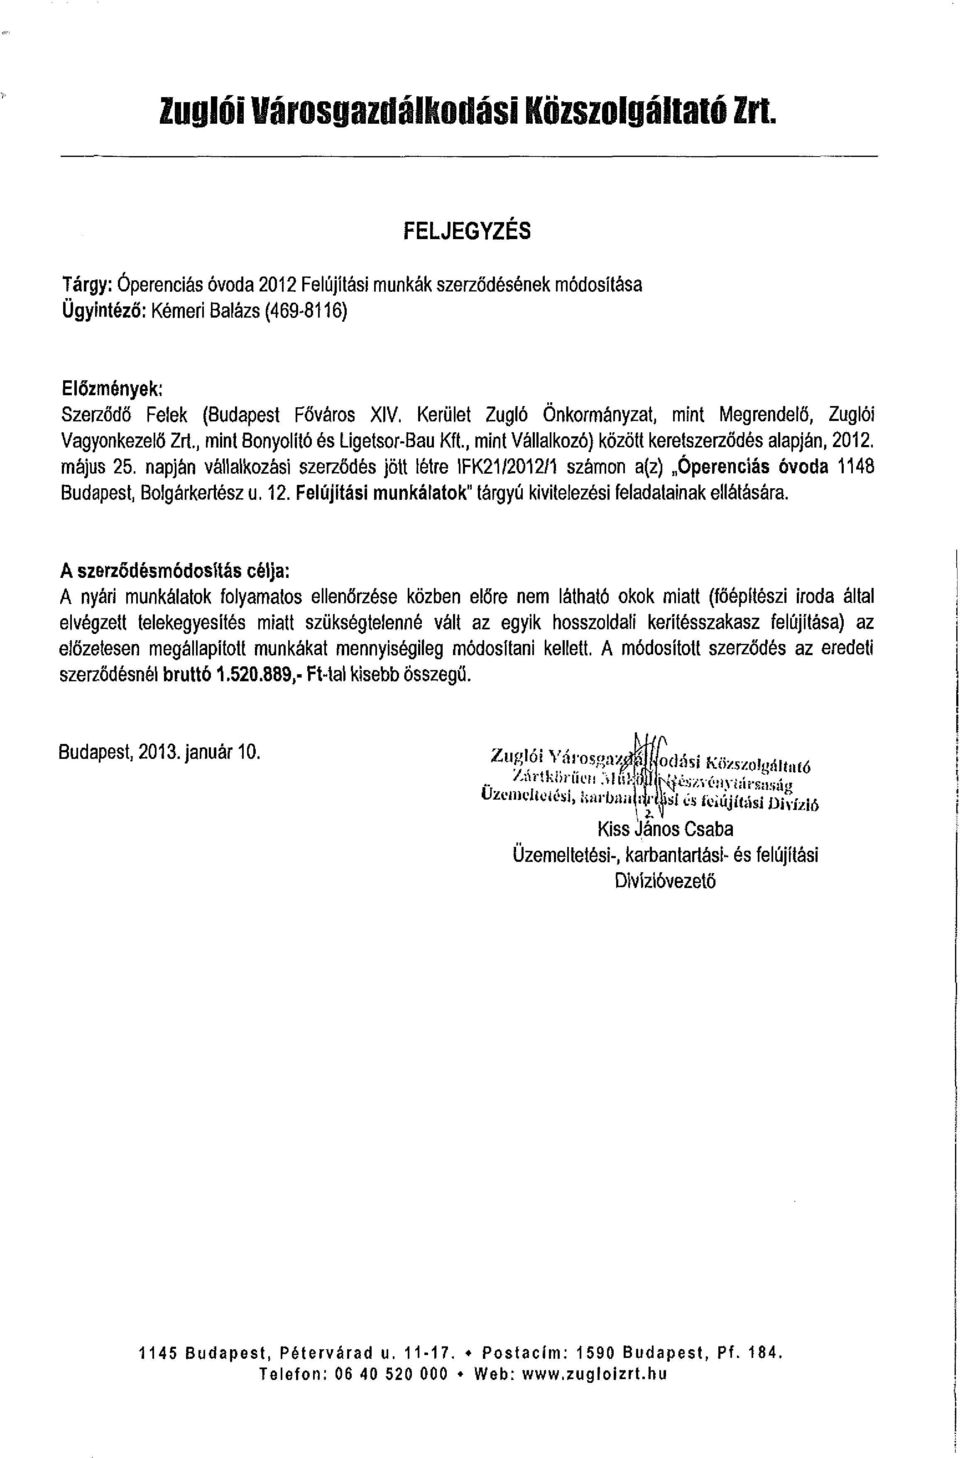 napján vállalkozási szerződés jött létre IFK21/2012/1 számon a(z) Óperenciás óvoda 1148 Budapest, Bolgárkertész u. 12. Felújítási munkálatok" tárgyú kivitelezési feladatainak ellátására.